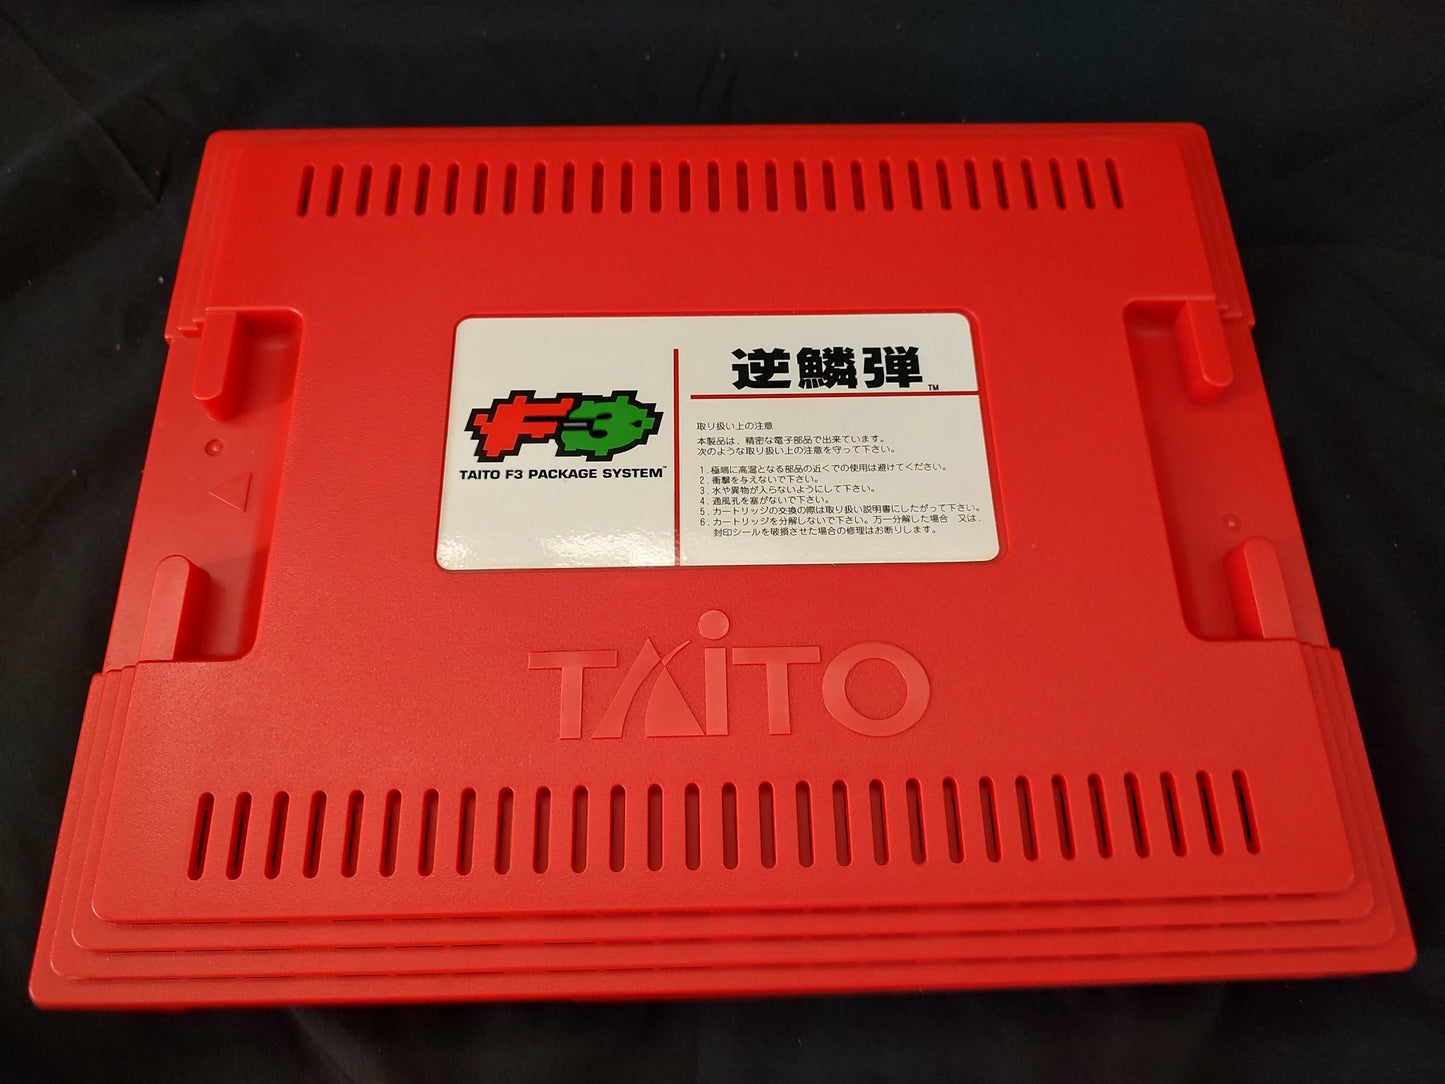 GEKIRINDAN Taito Taito F3 Package System, Cartridge, Manuals, Working-g0127-